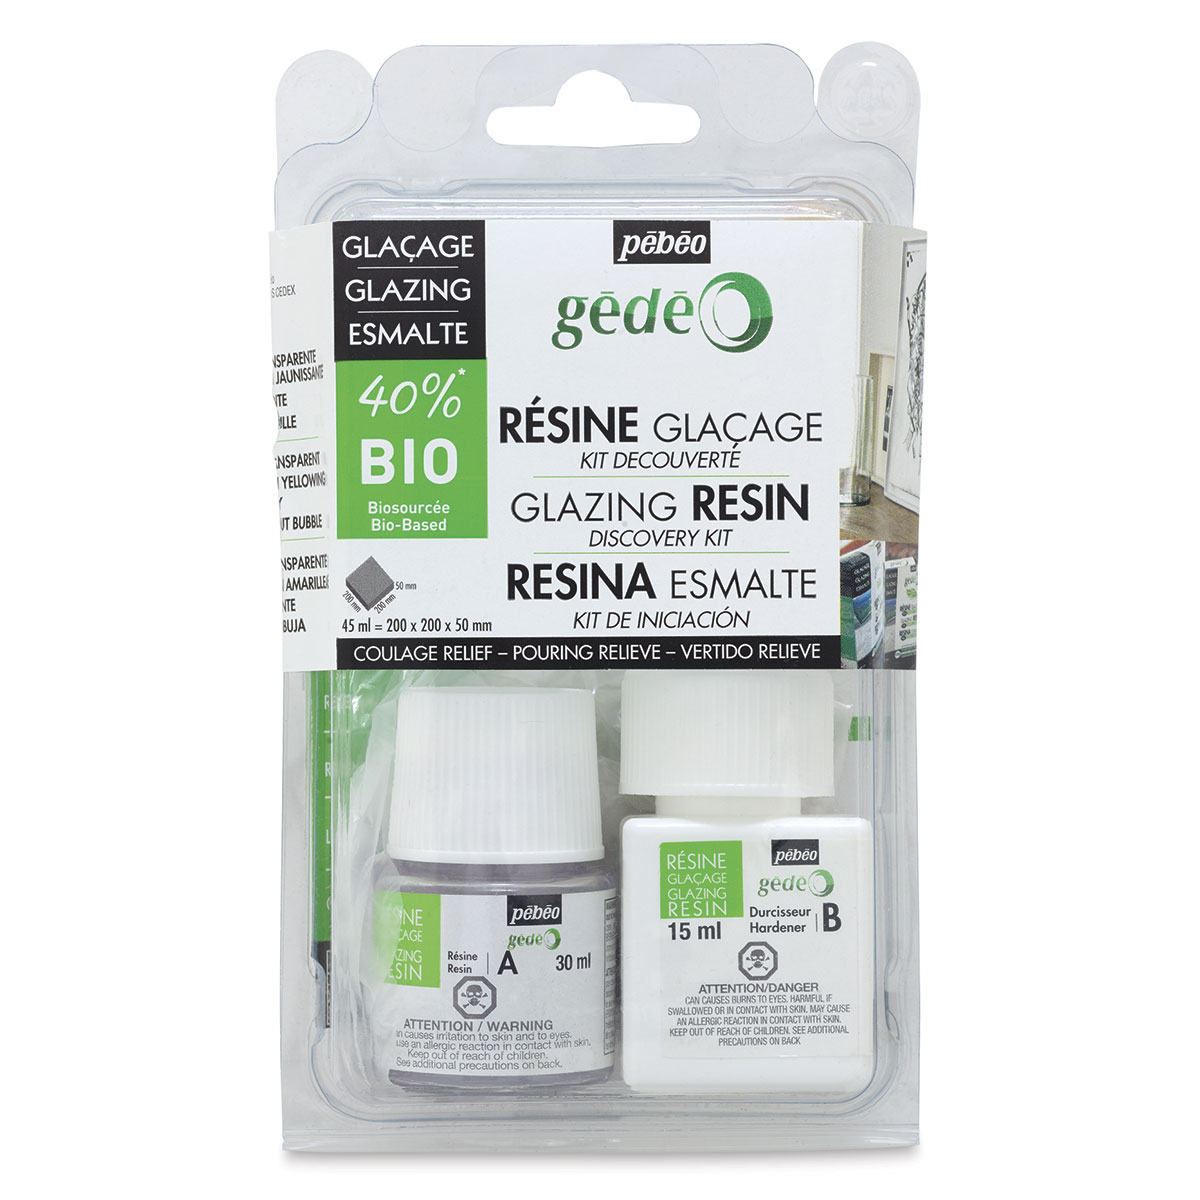 Gedeo Bio-Based Resin - Pro Resin, 6 liters